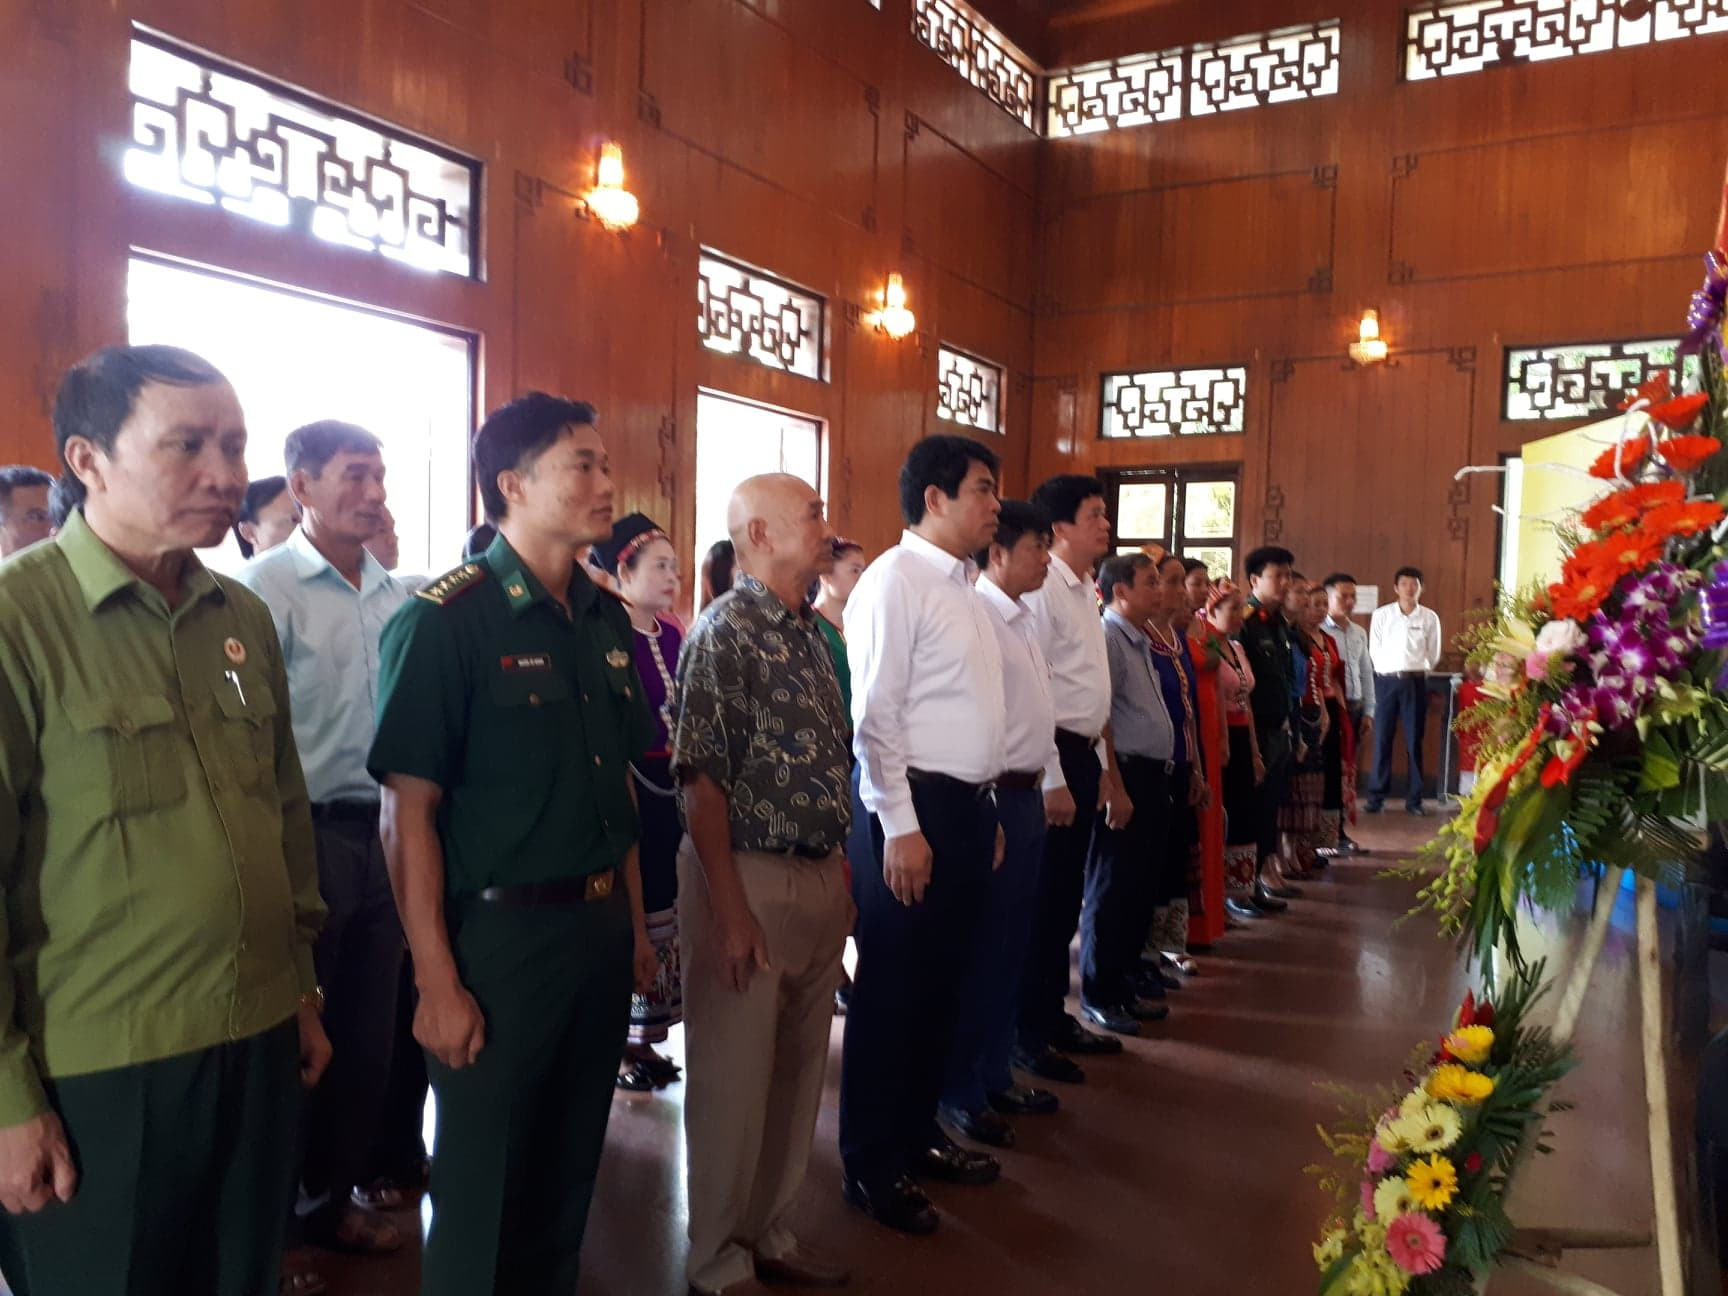 bna_anh 1 đoàn công tác của huyện Con Cuông báo công với bác tại nhà tưởn niệm Bác Hồ, Kim Liên Nam Đàn